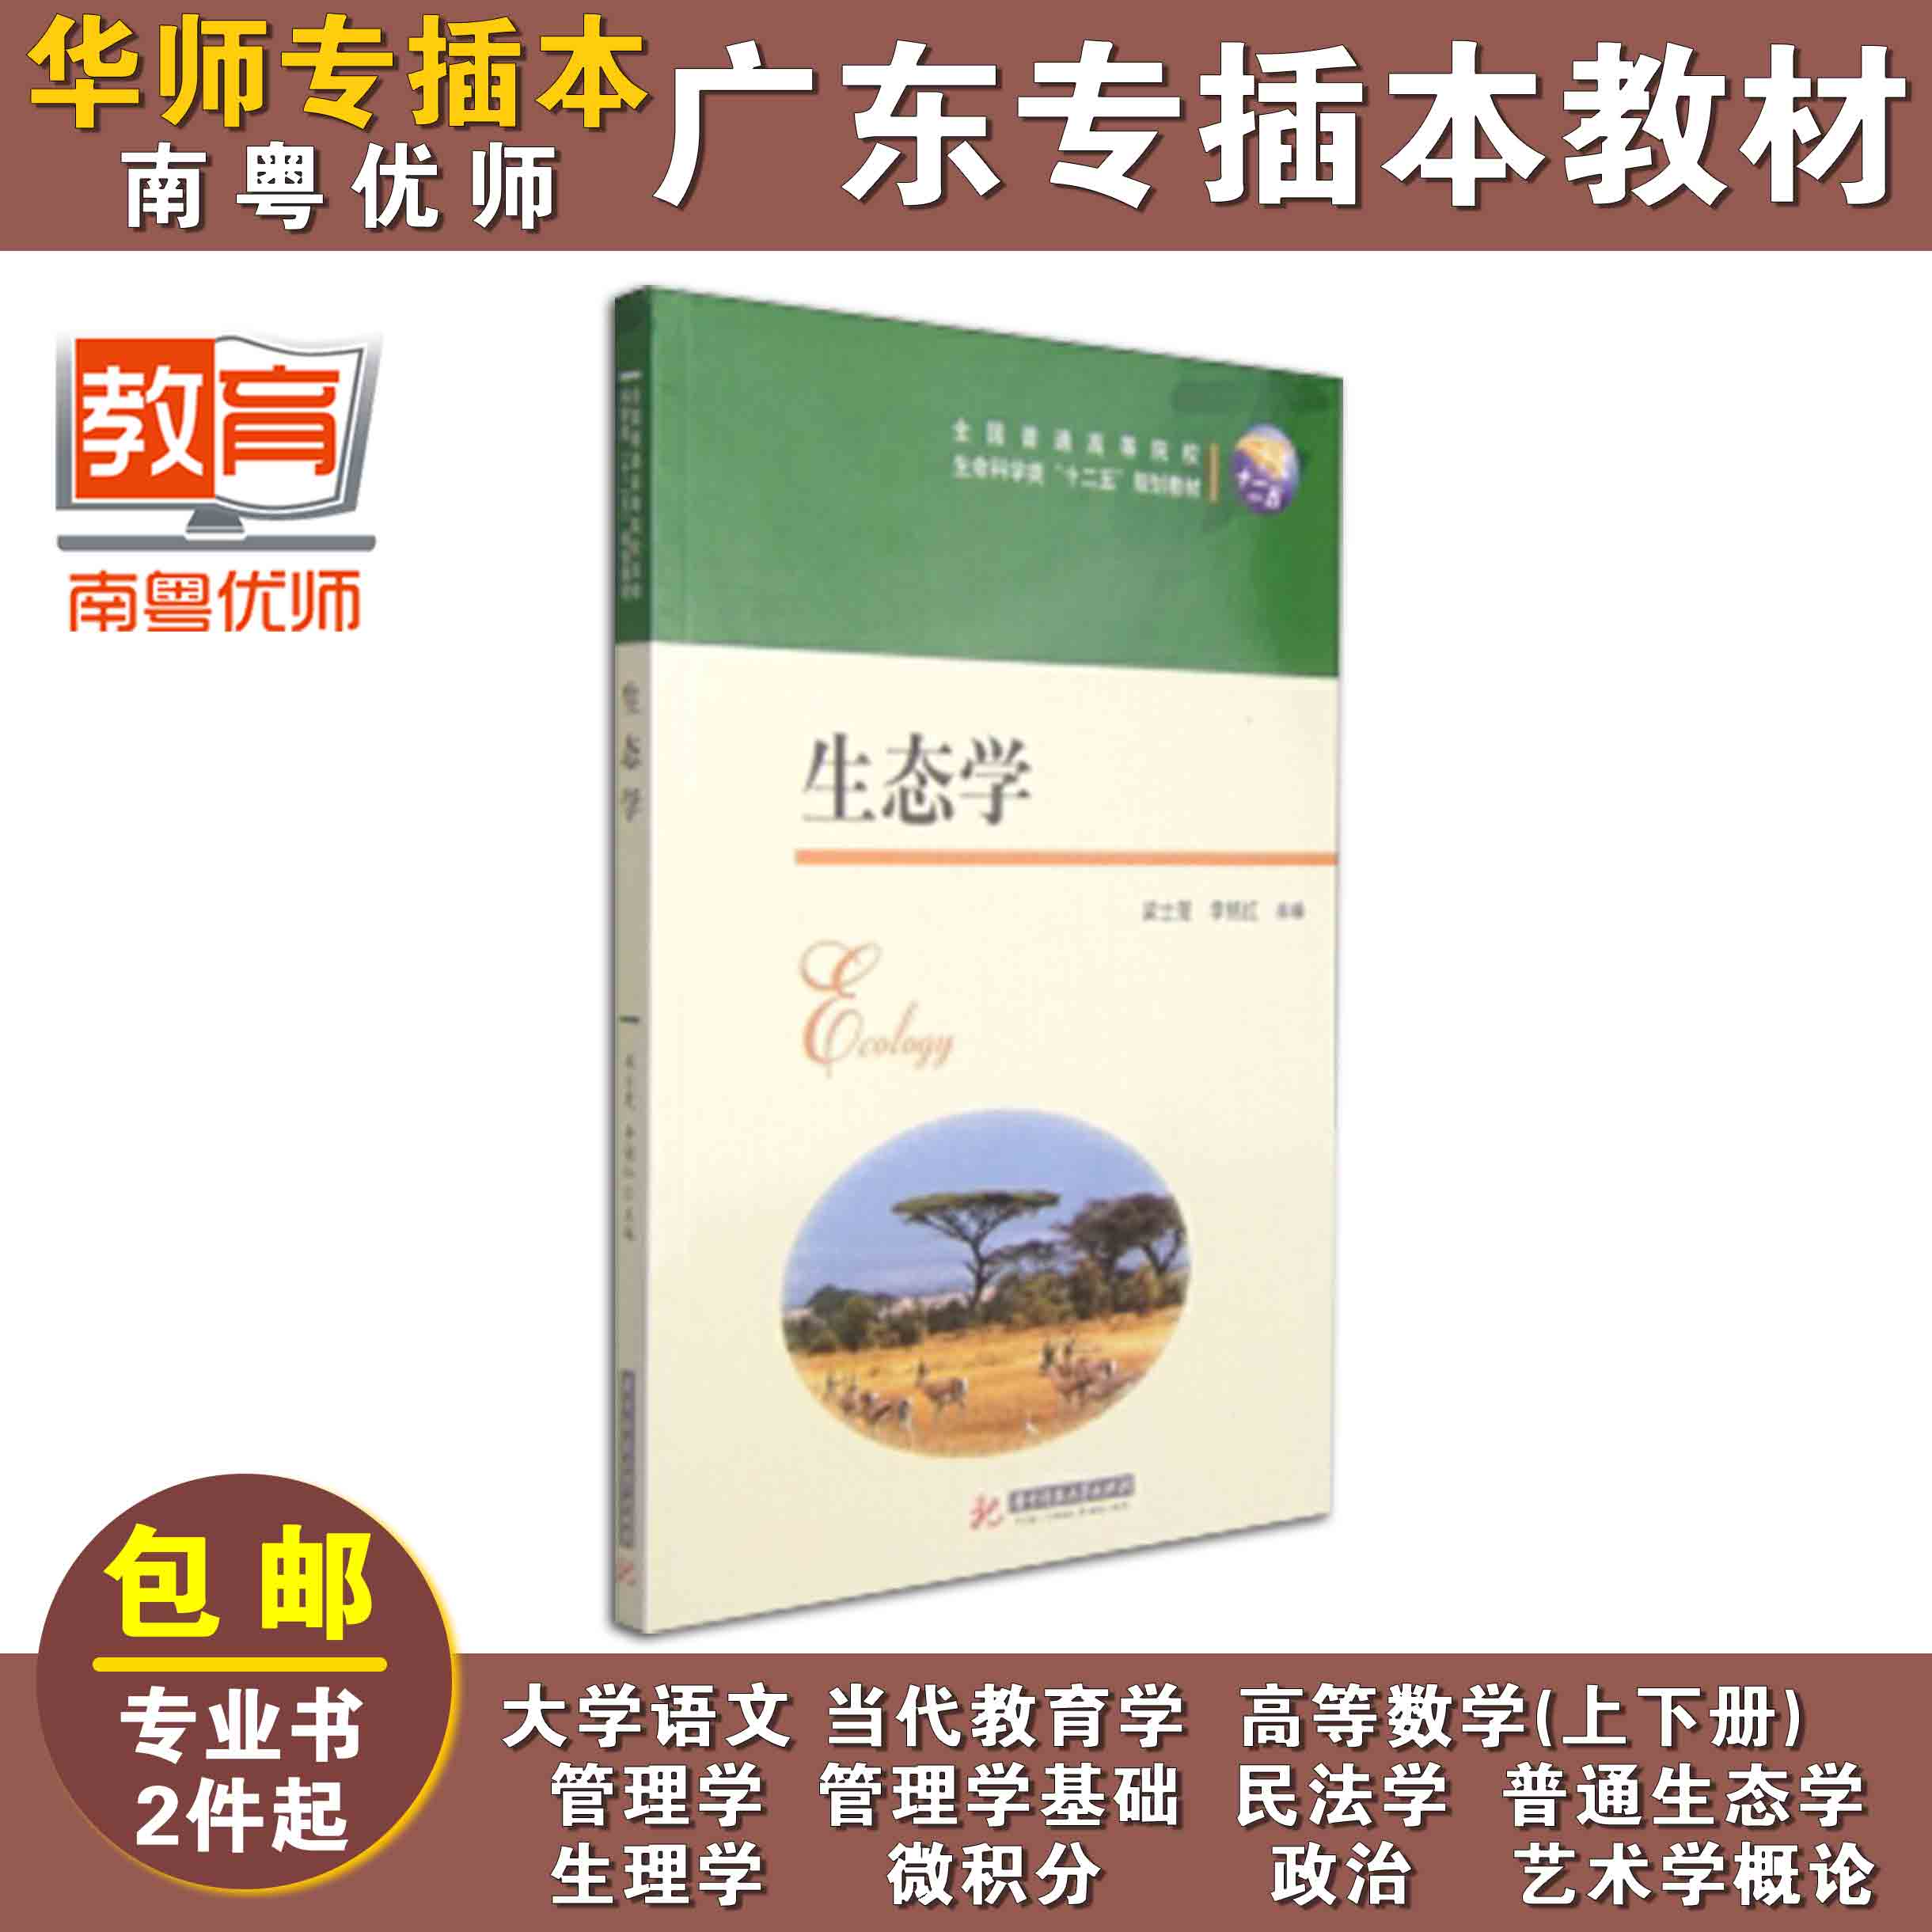 生态学,梁士楚,李铭红,华中科技大学出版社